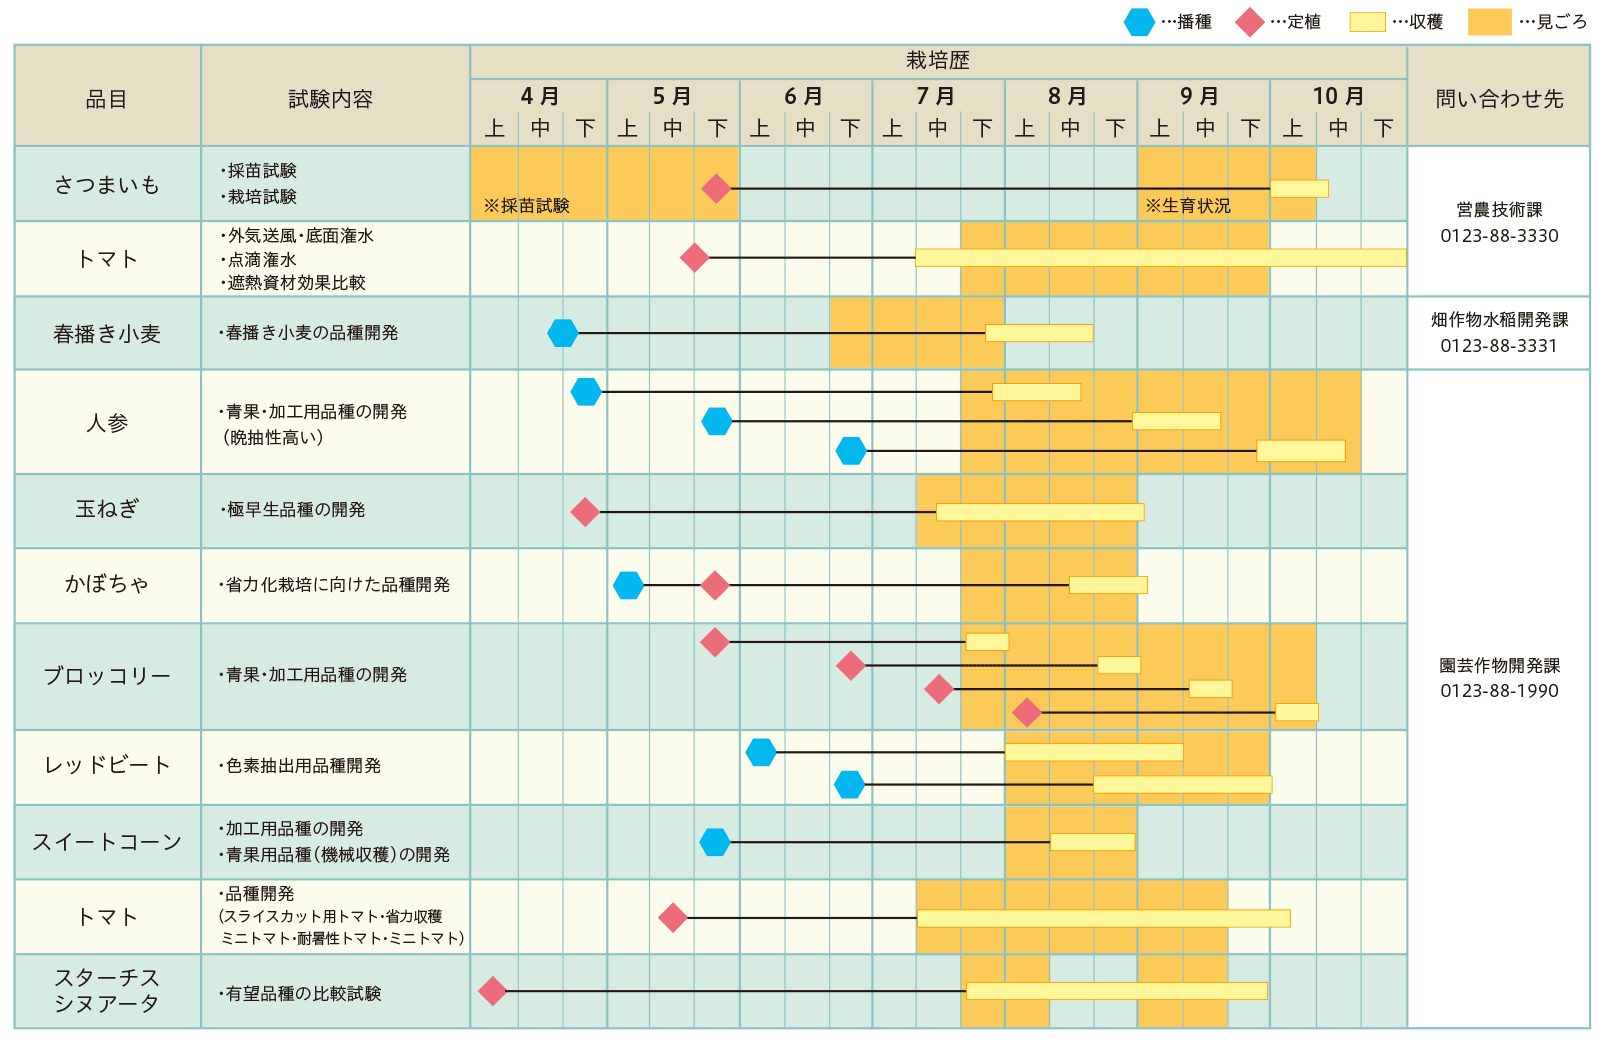 図1長沼研究農場試験見ごろカレンダー